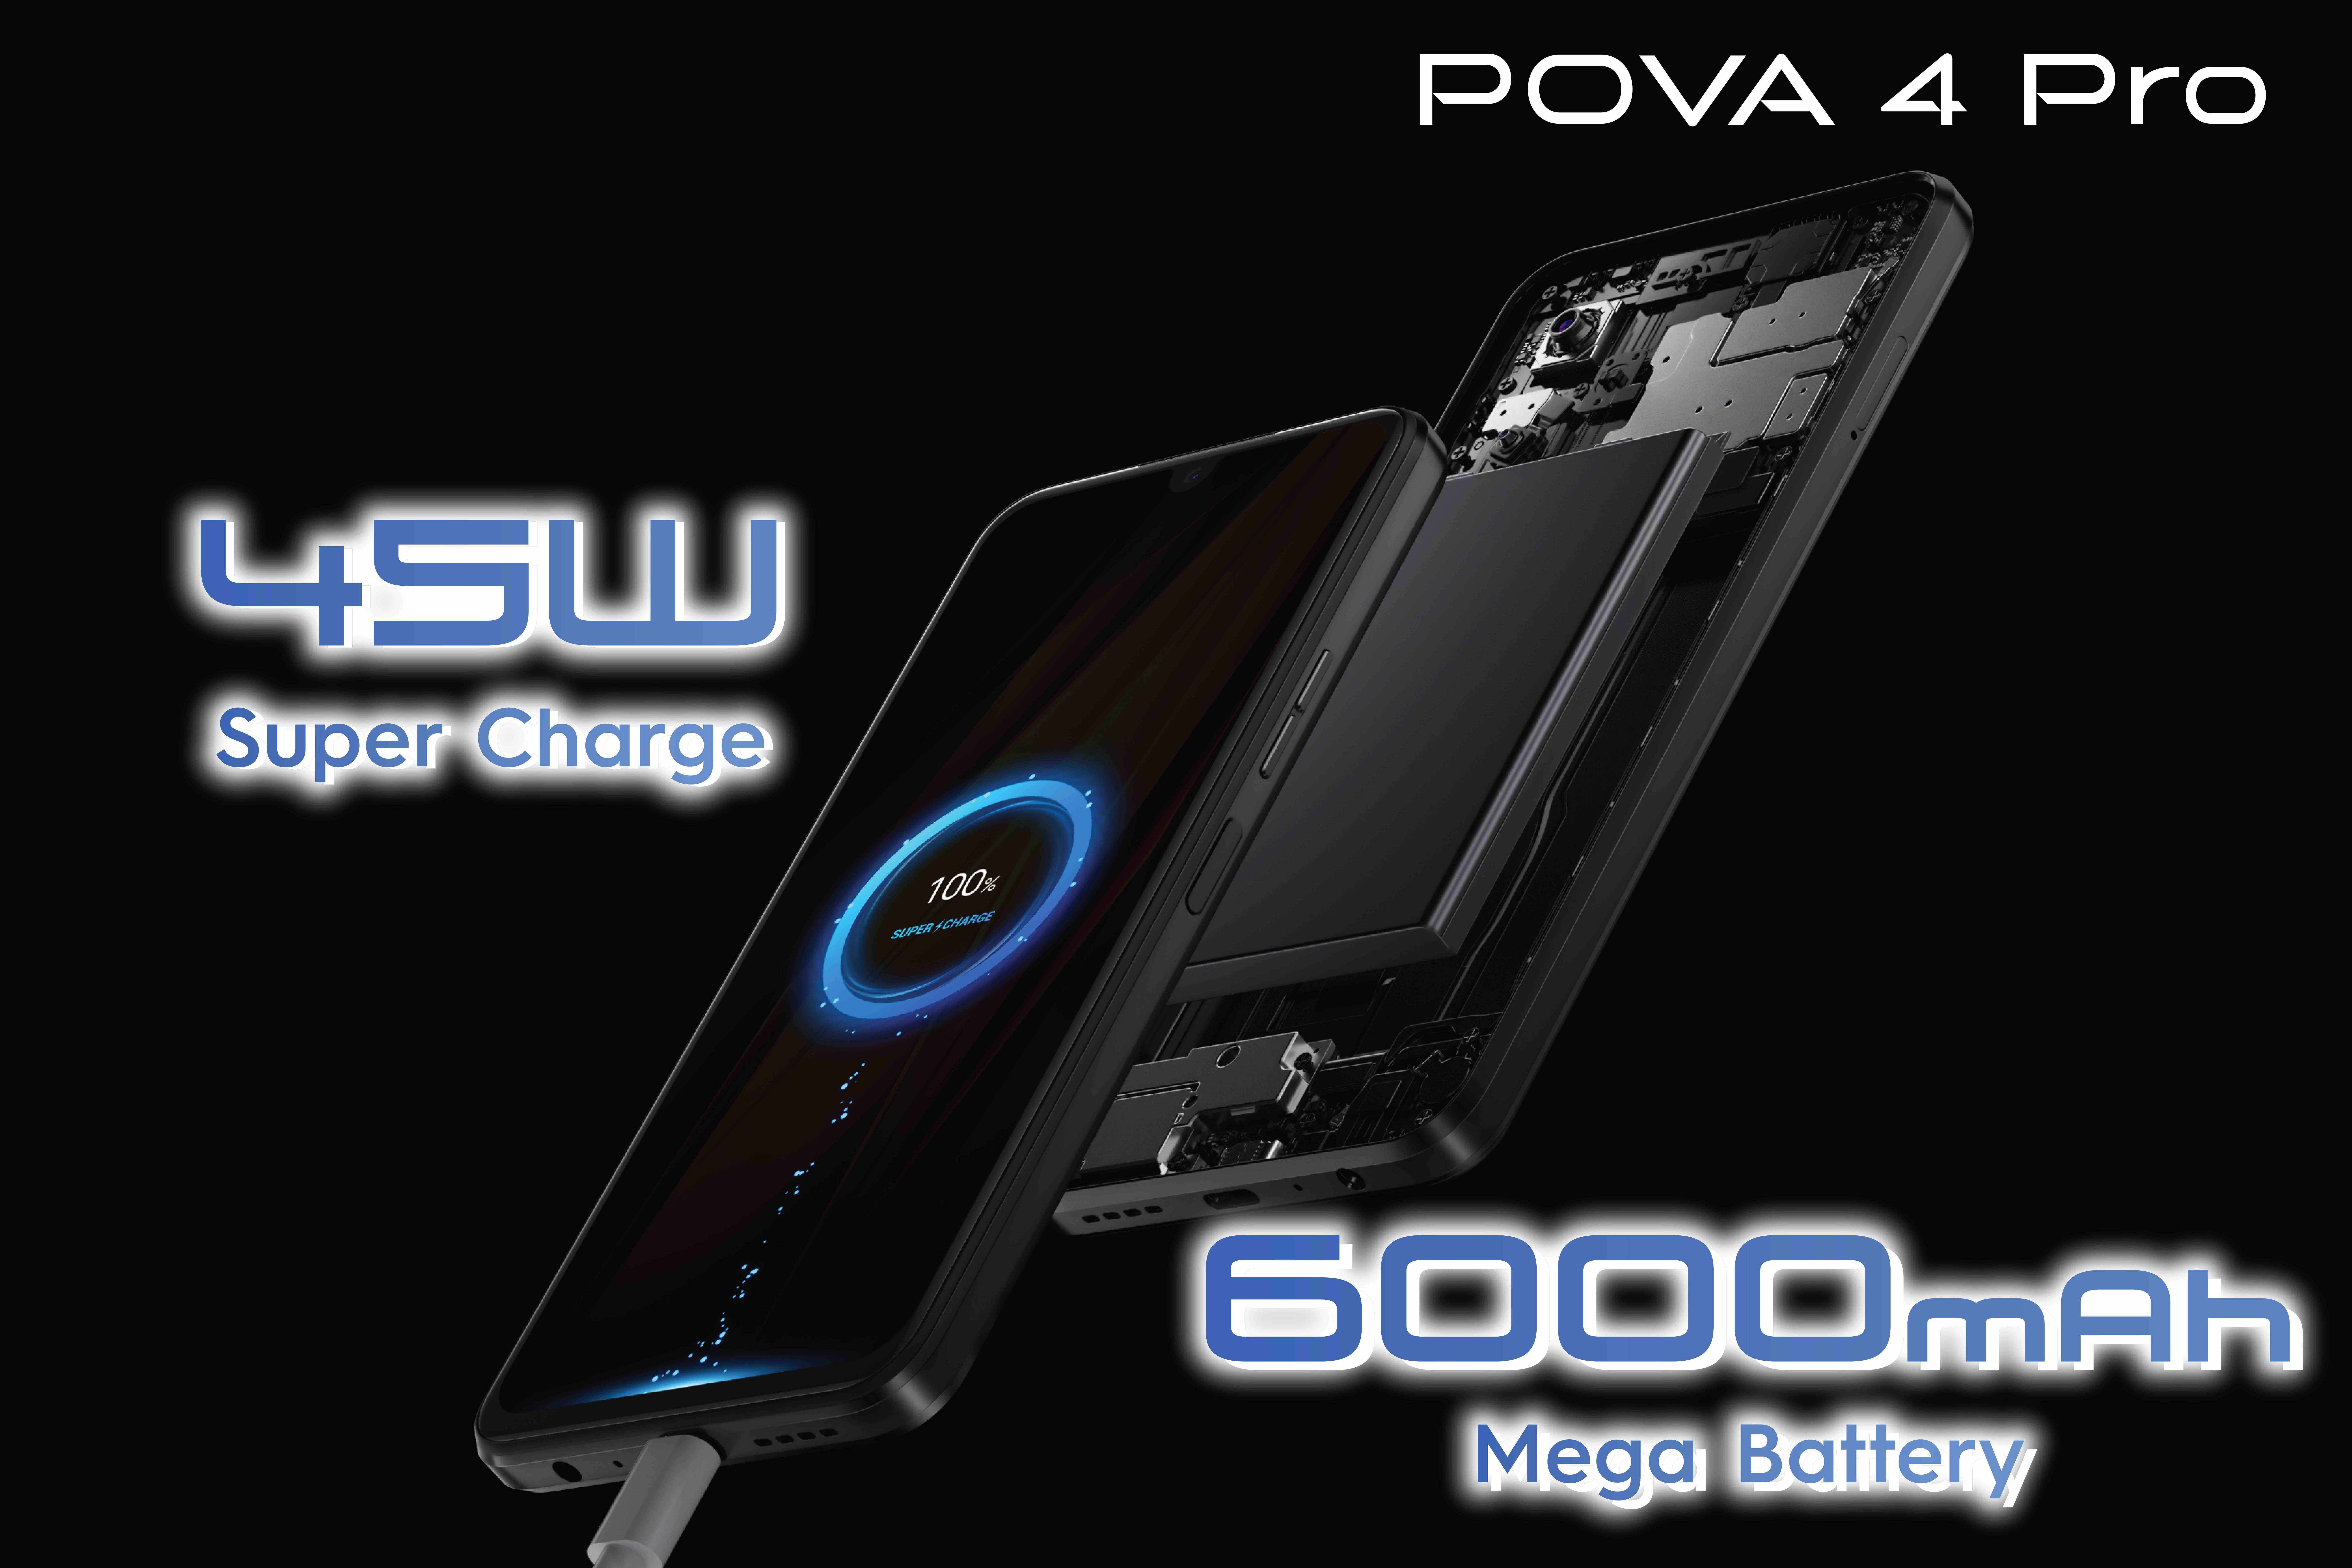 2.POVA 4 Pro ระบบแบตเตอรี่พิเศษ | POVA 4 Pro | POVA 4 Pro สมาร์ทโฟนล่าสุดจาก TECNO ดีไซน์อัปเกรดทรงพลัง